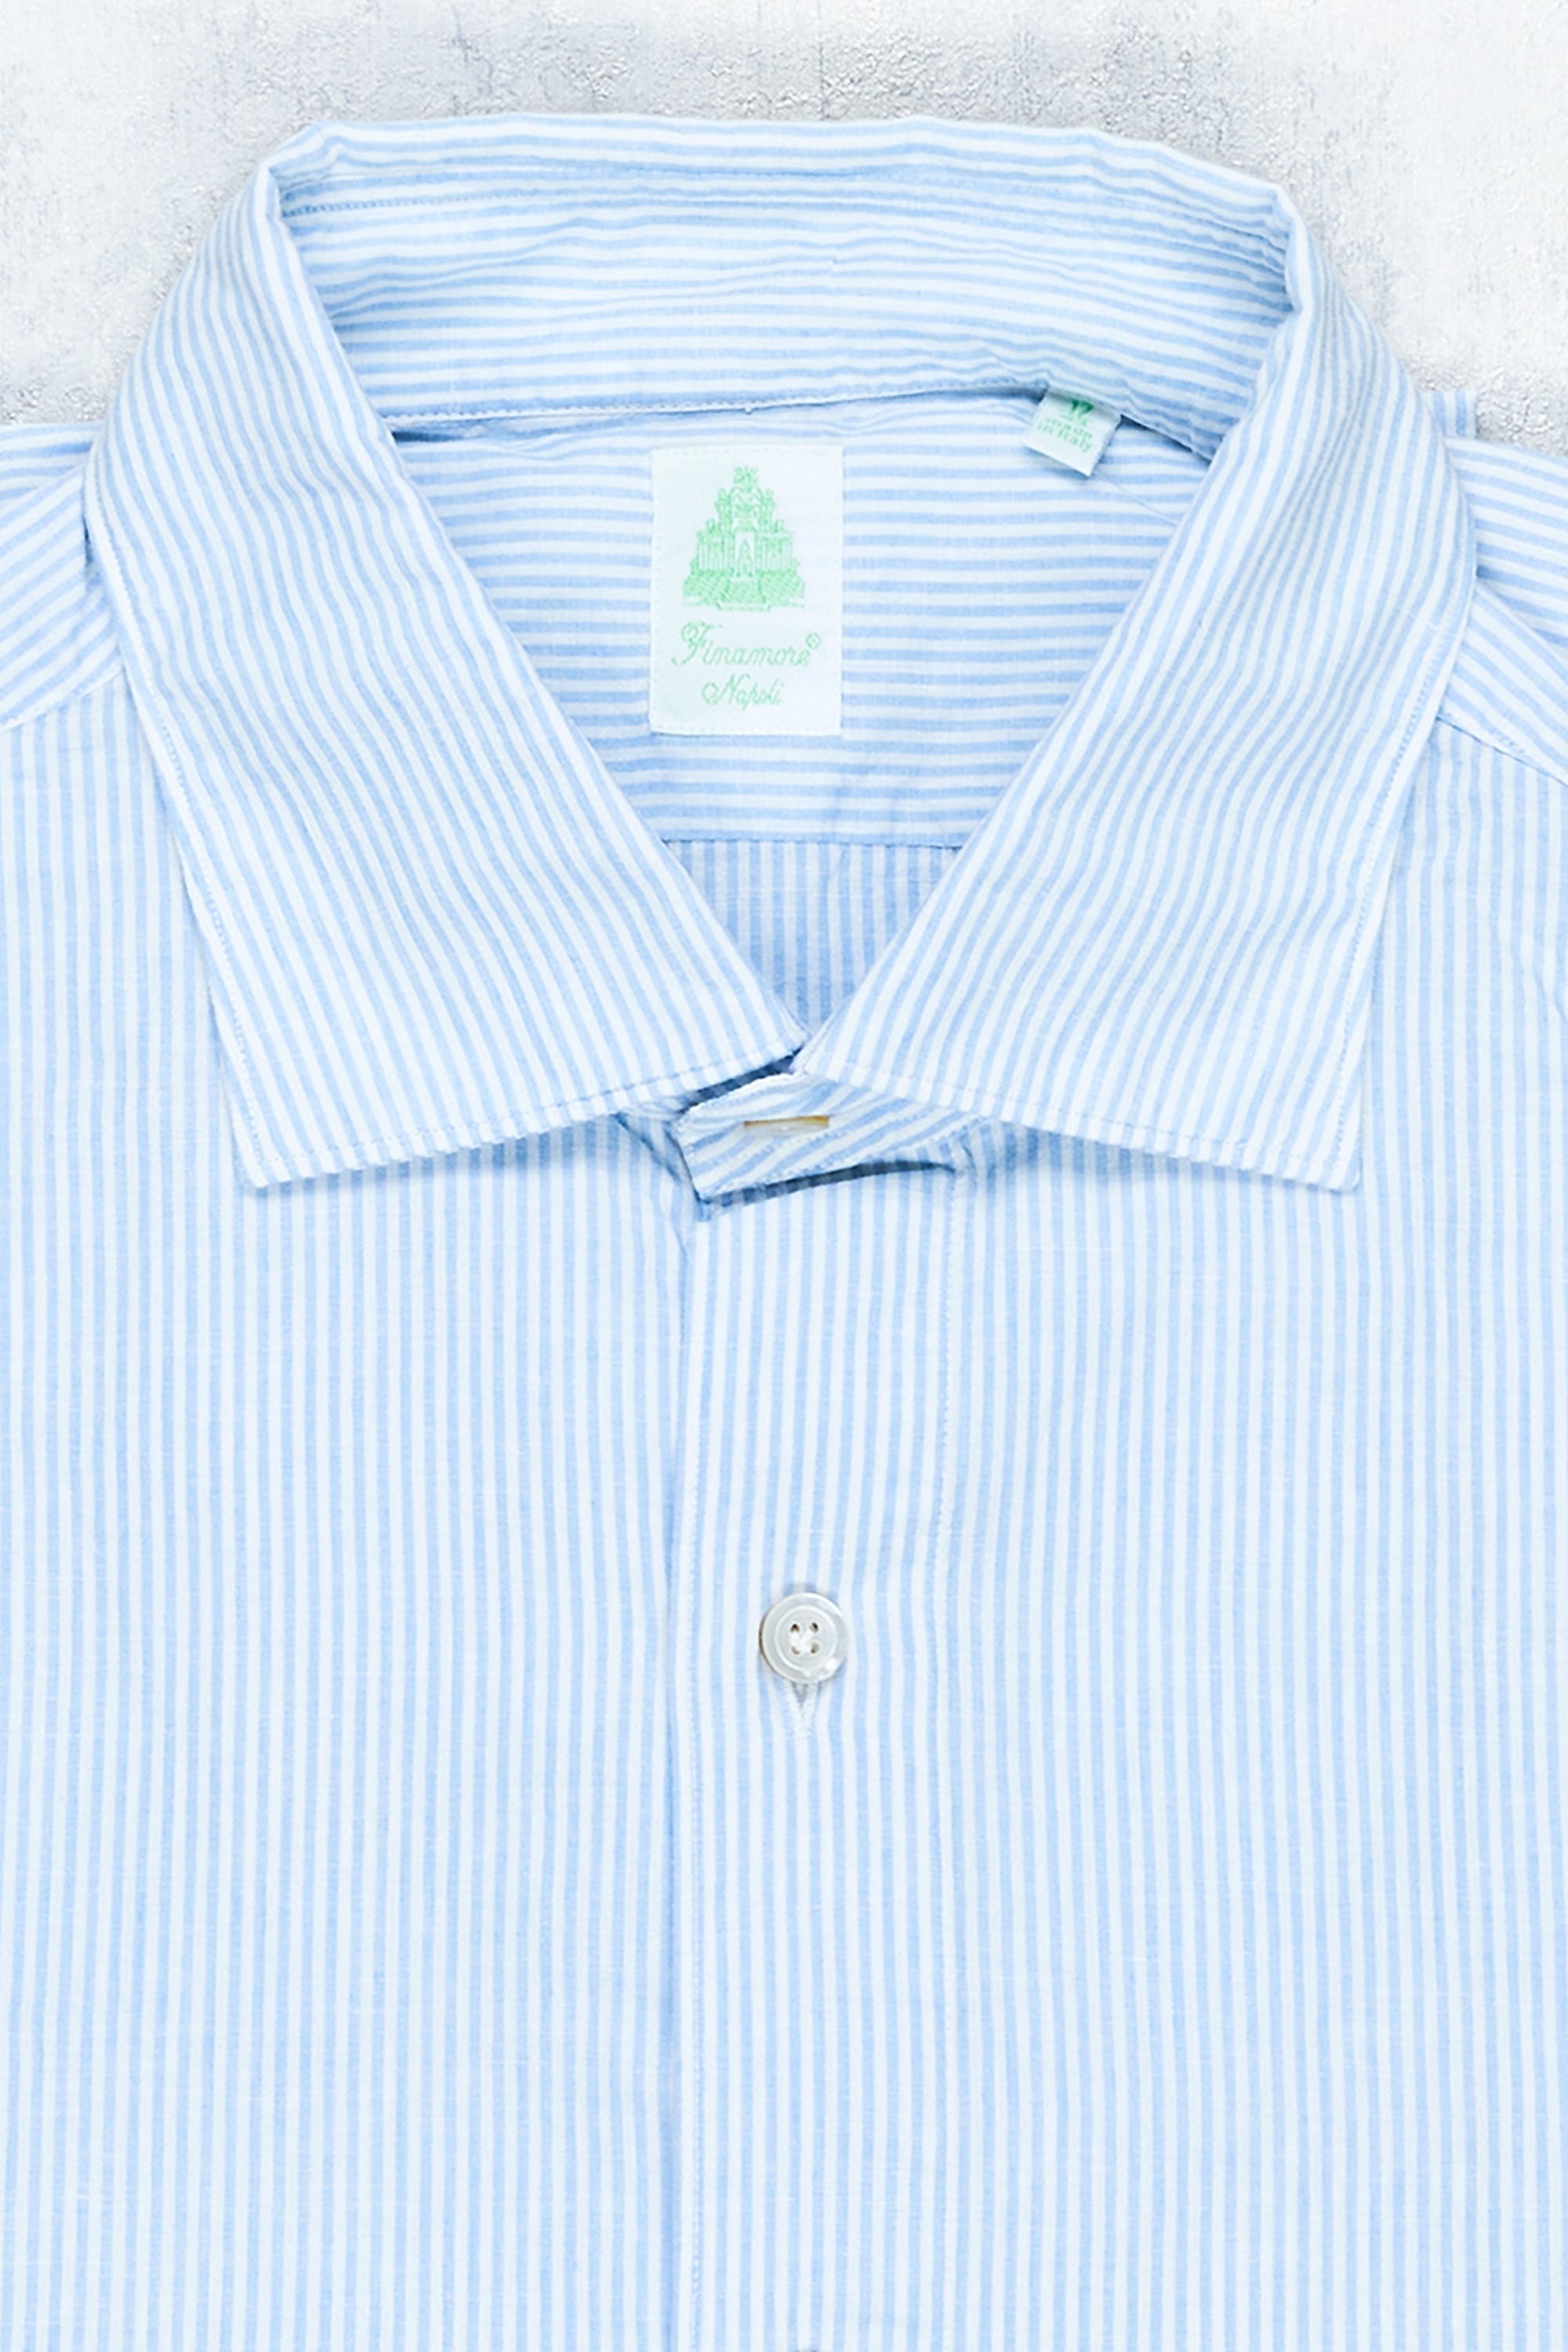 Finamore Blue/White Stripe Cotton/Linen Spread Collar Sport Shirt